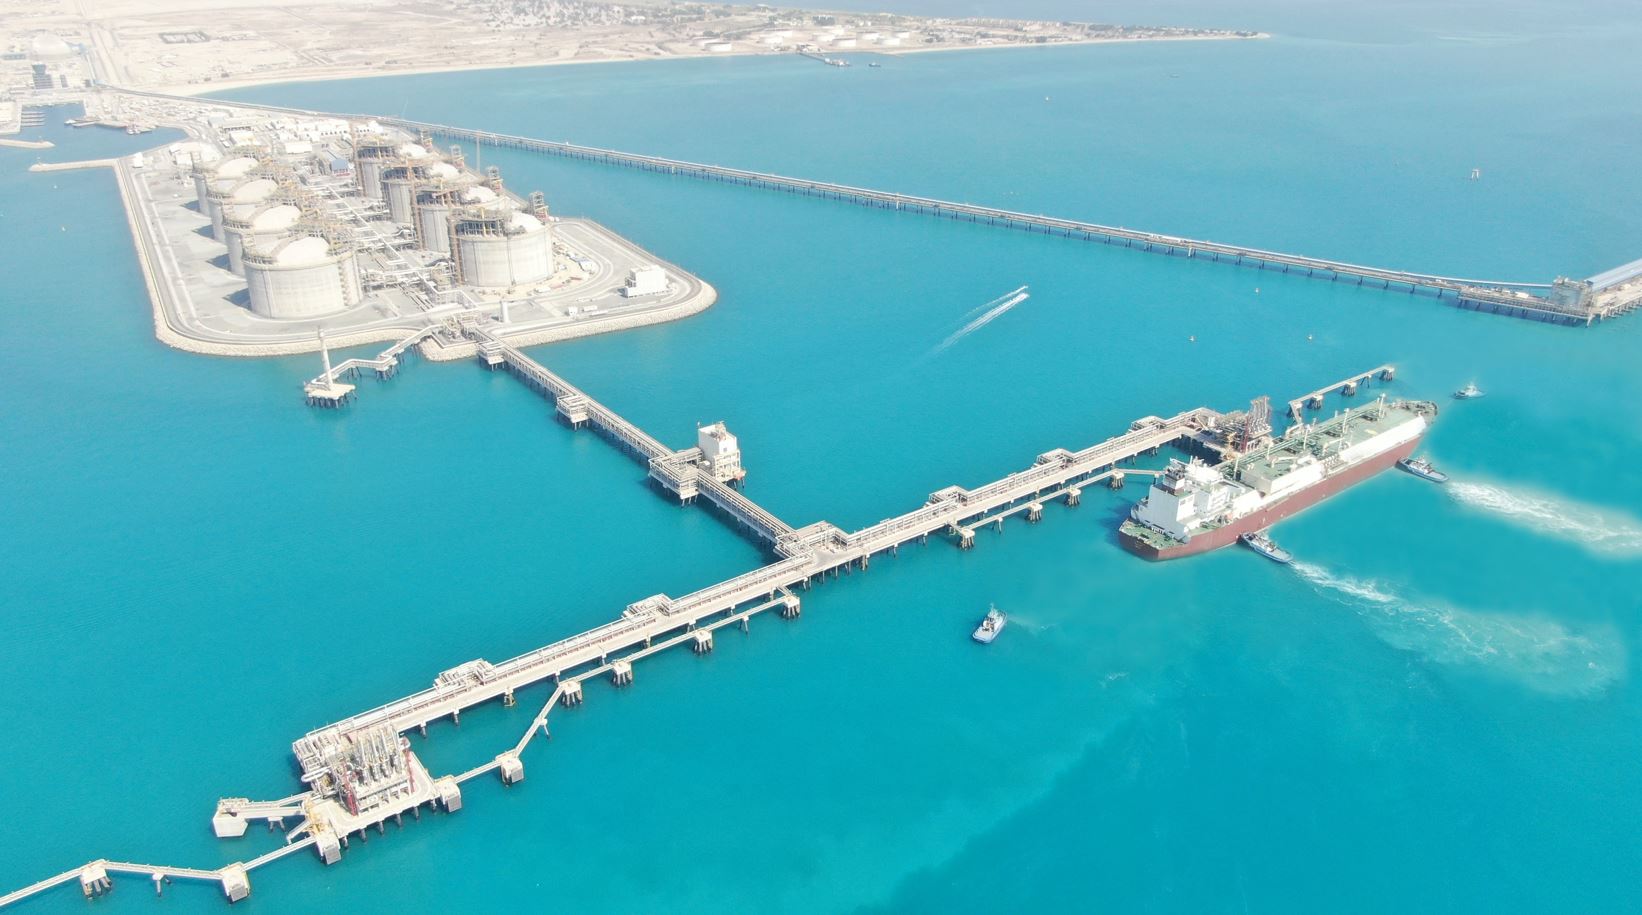 South Korean consortium completes Kuwait’s Al-Zour LNG import terminal